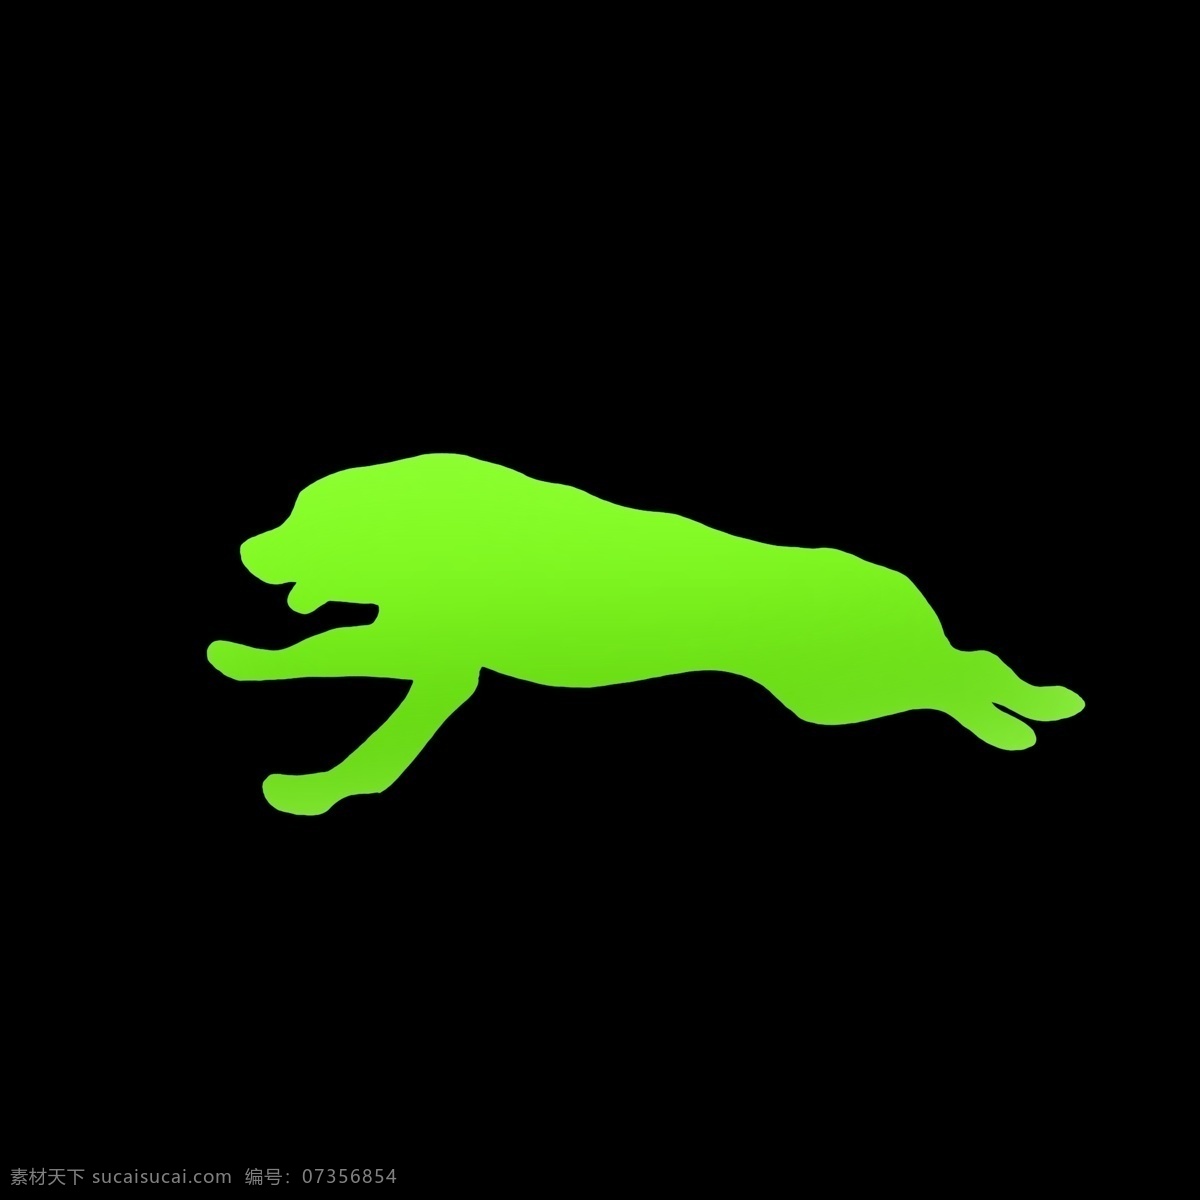 绿色 豺狼虎豹 奔跑 图 形状 剪影 图案 动作 奔跑的样子 速度 运动 激情 节奏 ppt可用 纯色 渐变 简约 简洁 简单